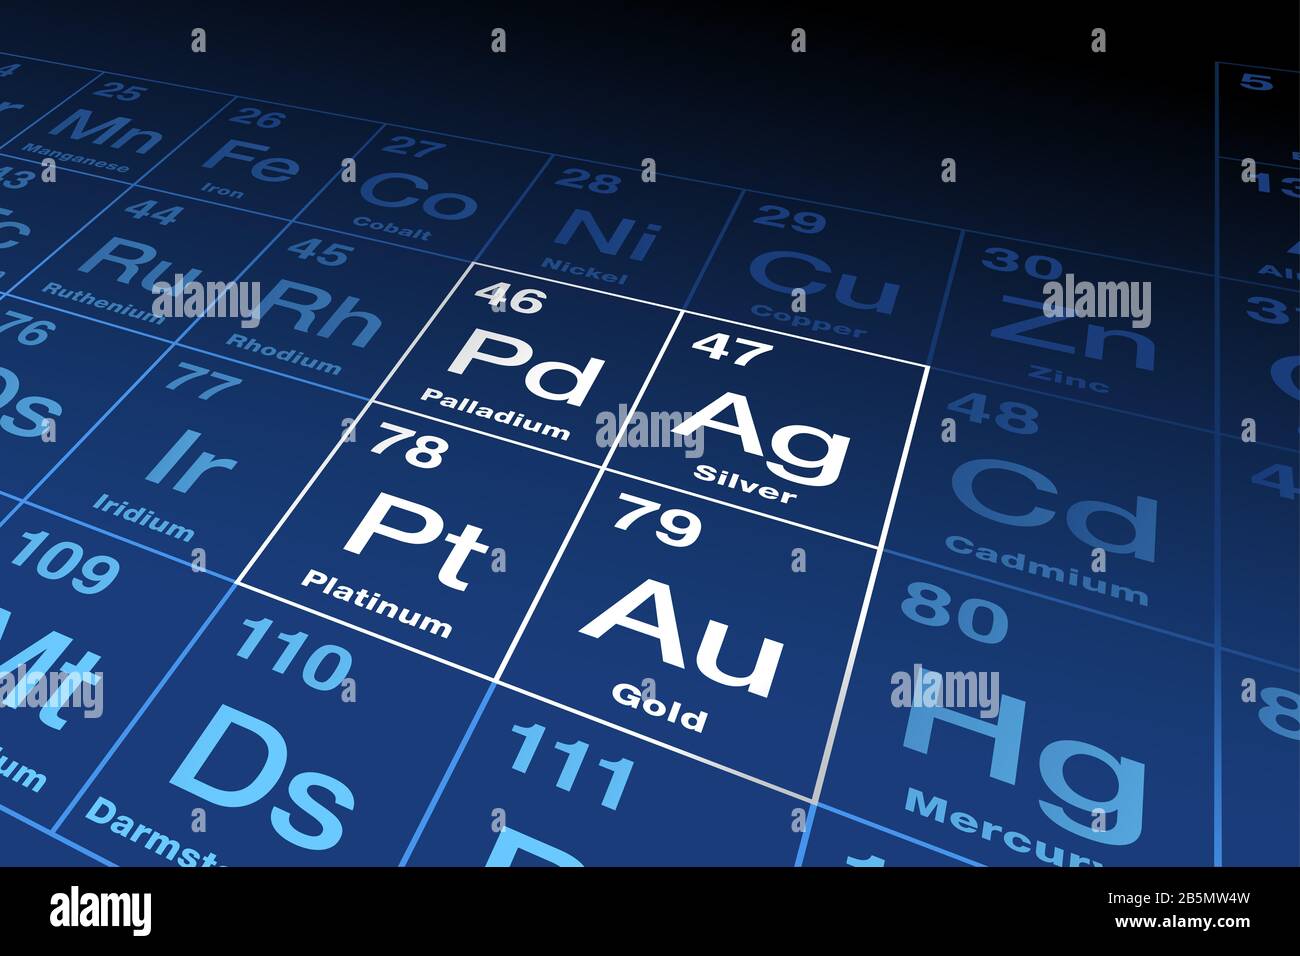 Metalli preziosi su tavola periodica. Elementi chimici in oro, argento, platino e palladio ad alto valore economico, utilizzati anche come valuta. Foto Stock